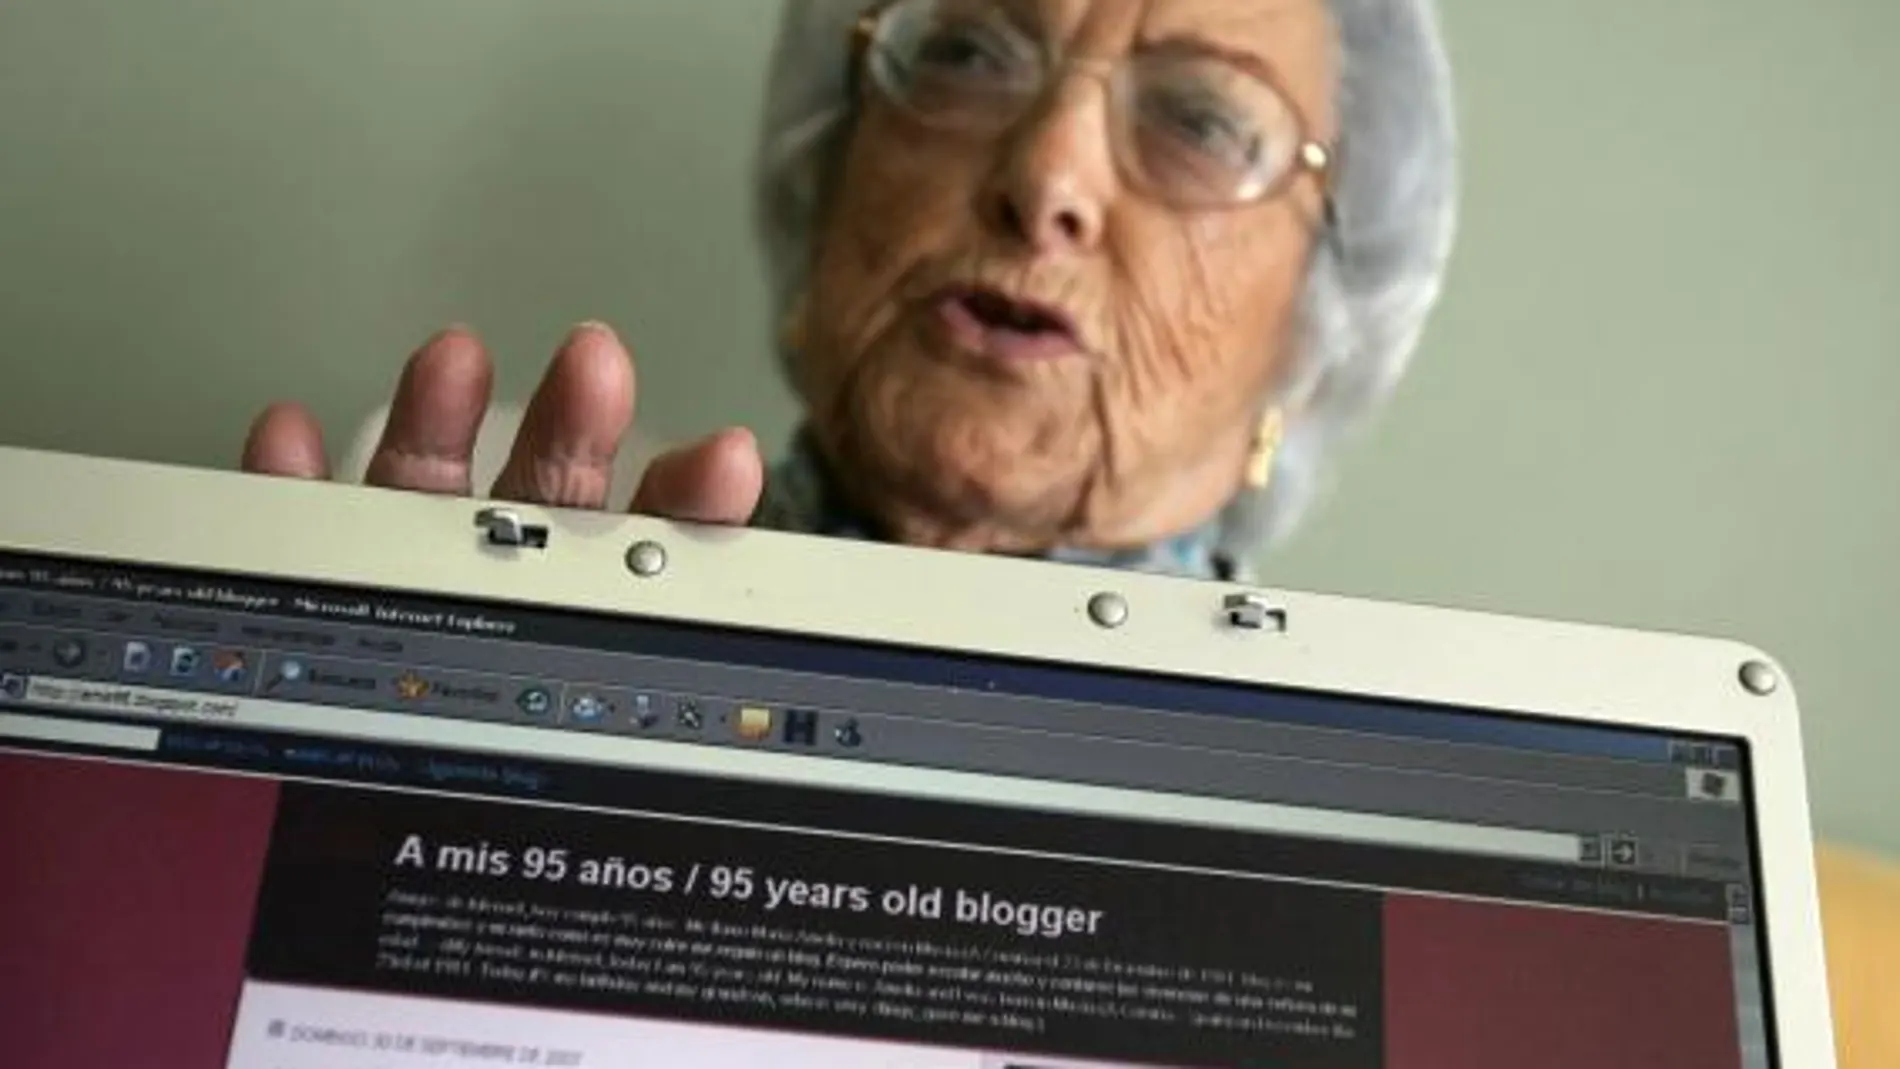 Fallece María Amelia López, la "abuela bloguera", a los 97 años